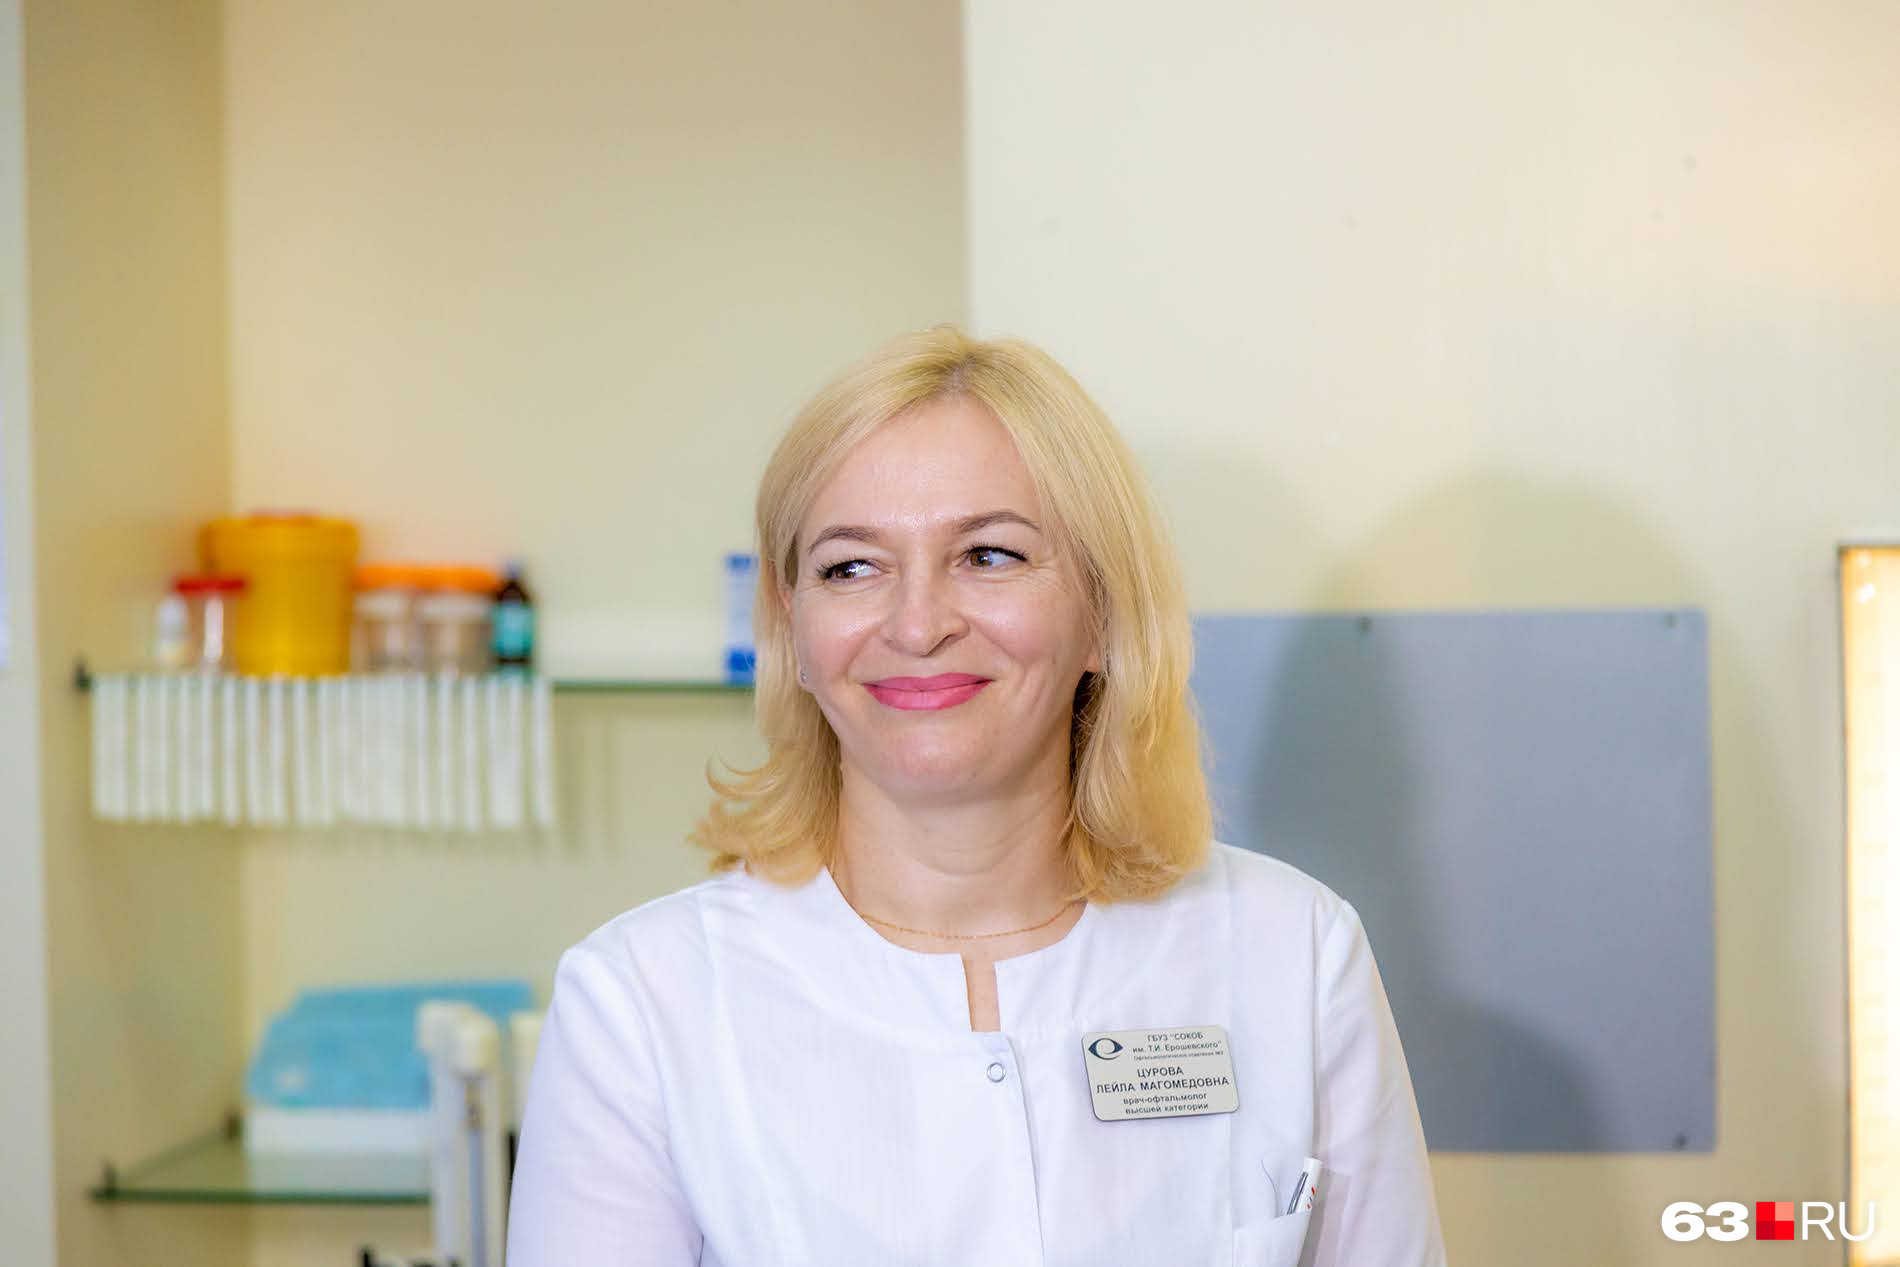 Офтальмолог Лейла Цурова тоже работала с пациентом